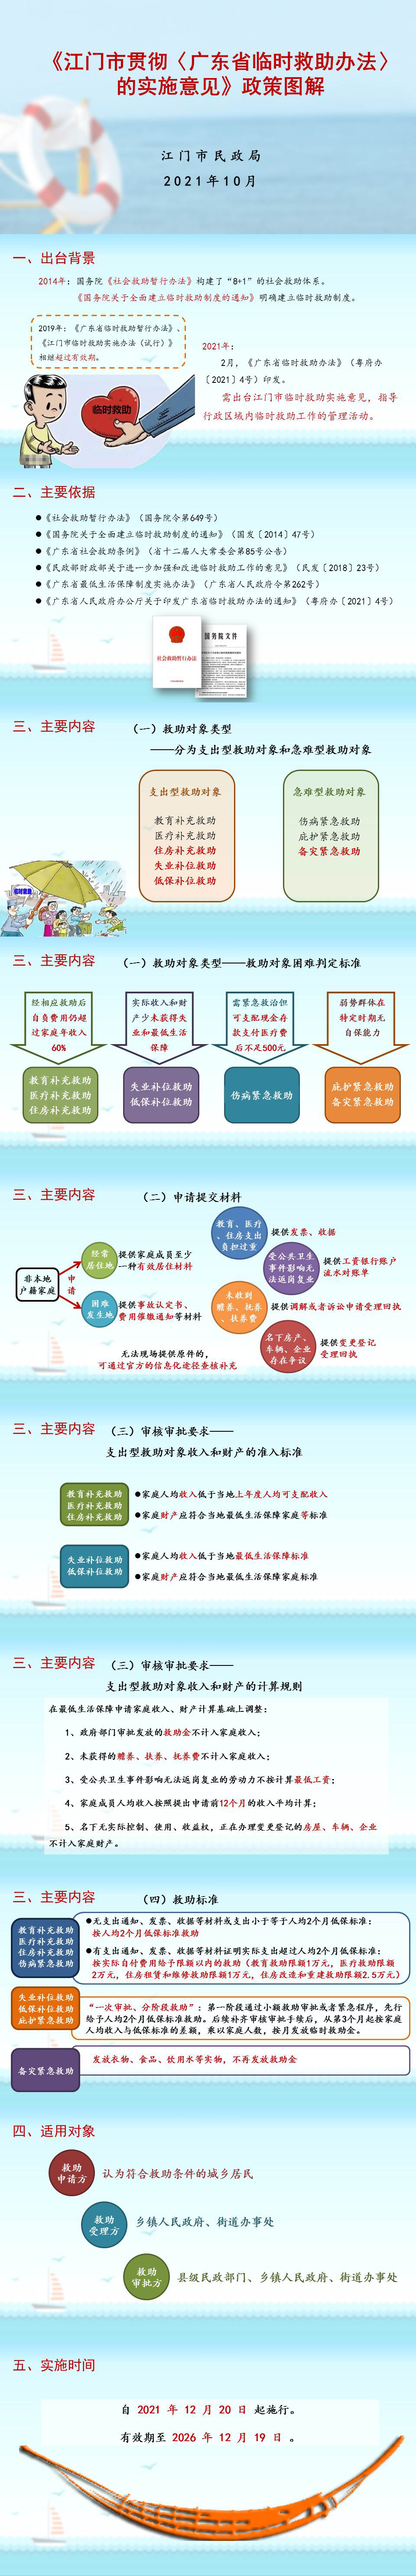 附件3：《江门市贯彻〈广东省临时救助办法〉的实施意见》政策图解2021-11-19.jpg